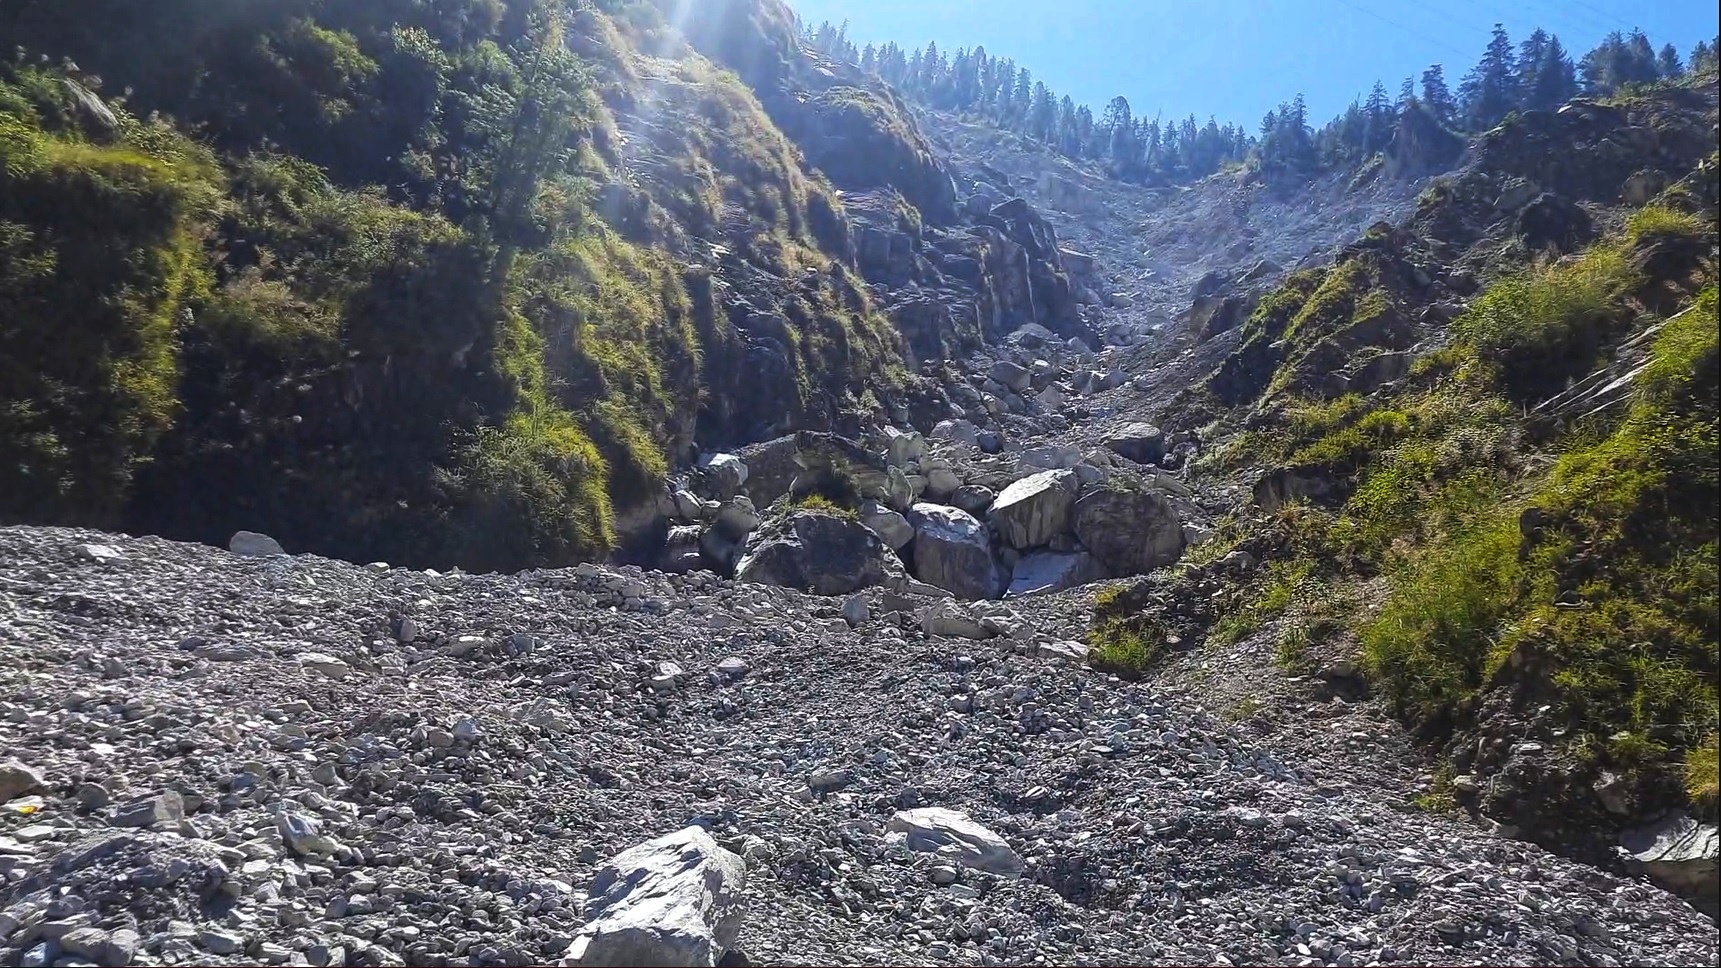 landslide down slope in forested area